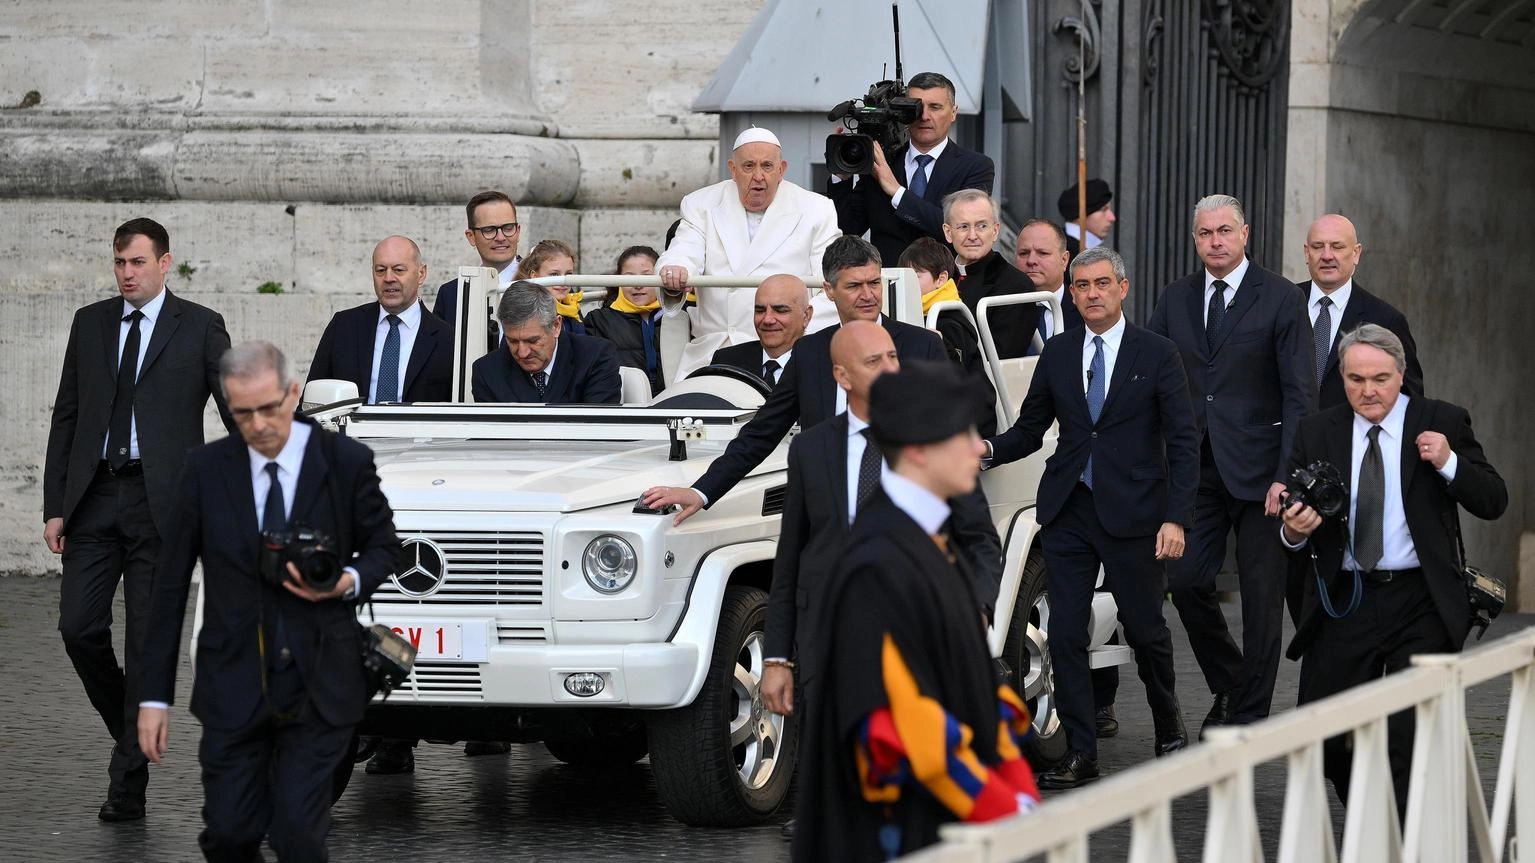 Il Papa, giro in 'papamobile' in piazza al termine messa